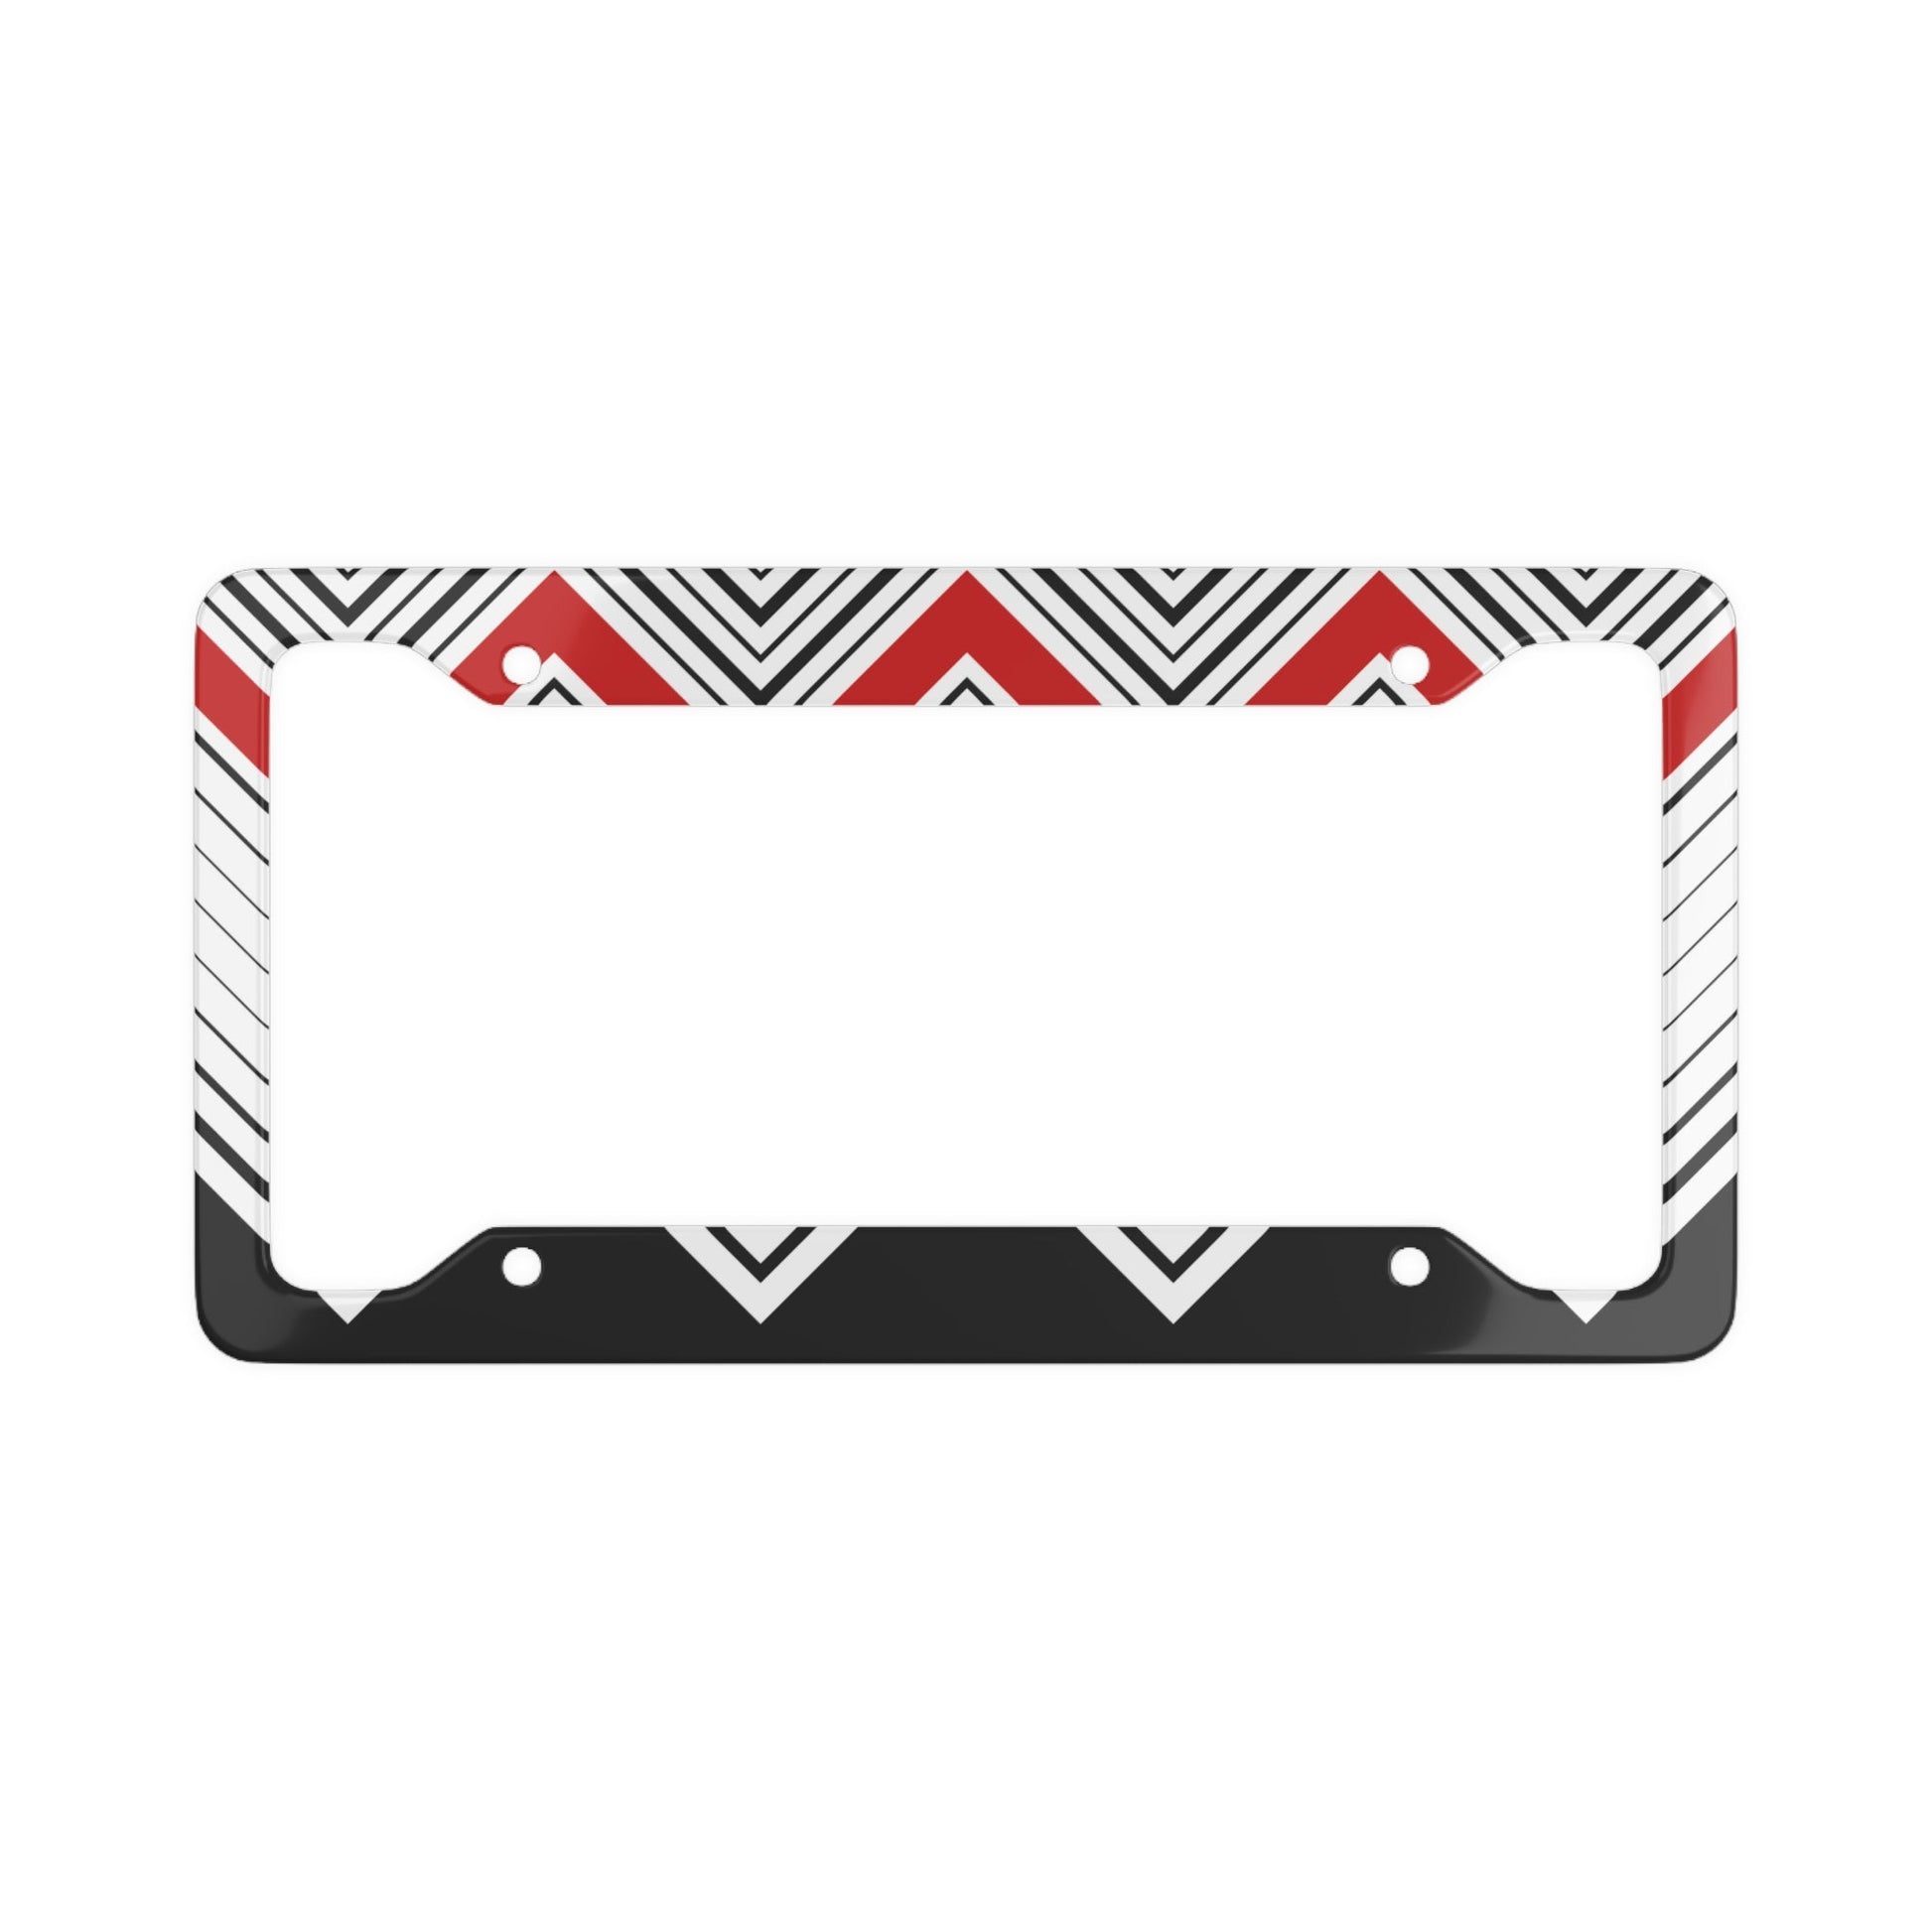 Custom License Plate Frame Black/ Red/ White-Shalav5